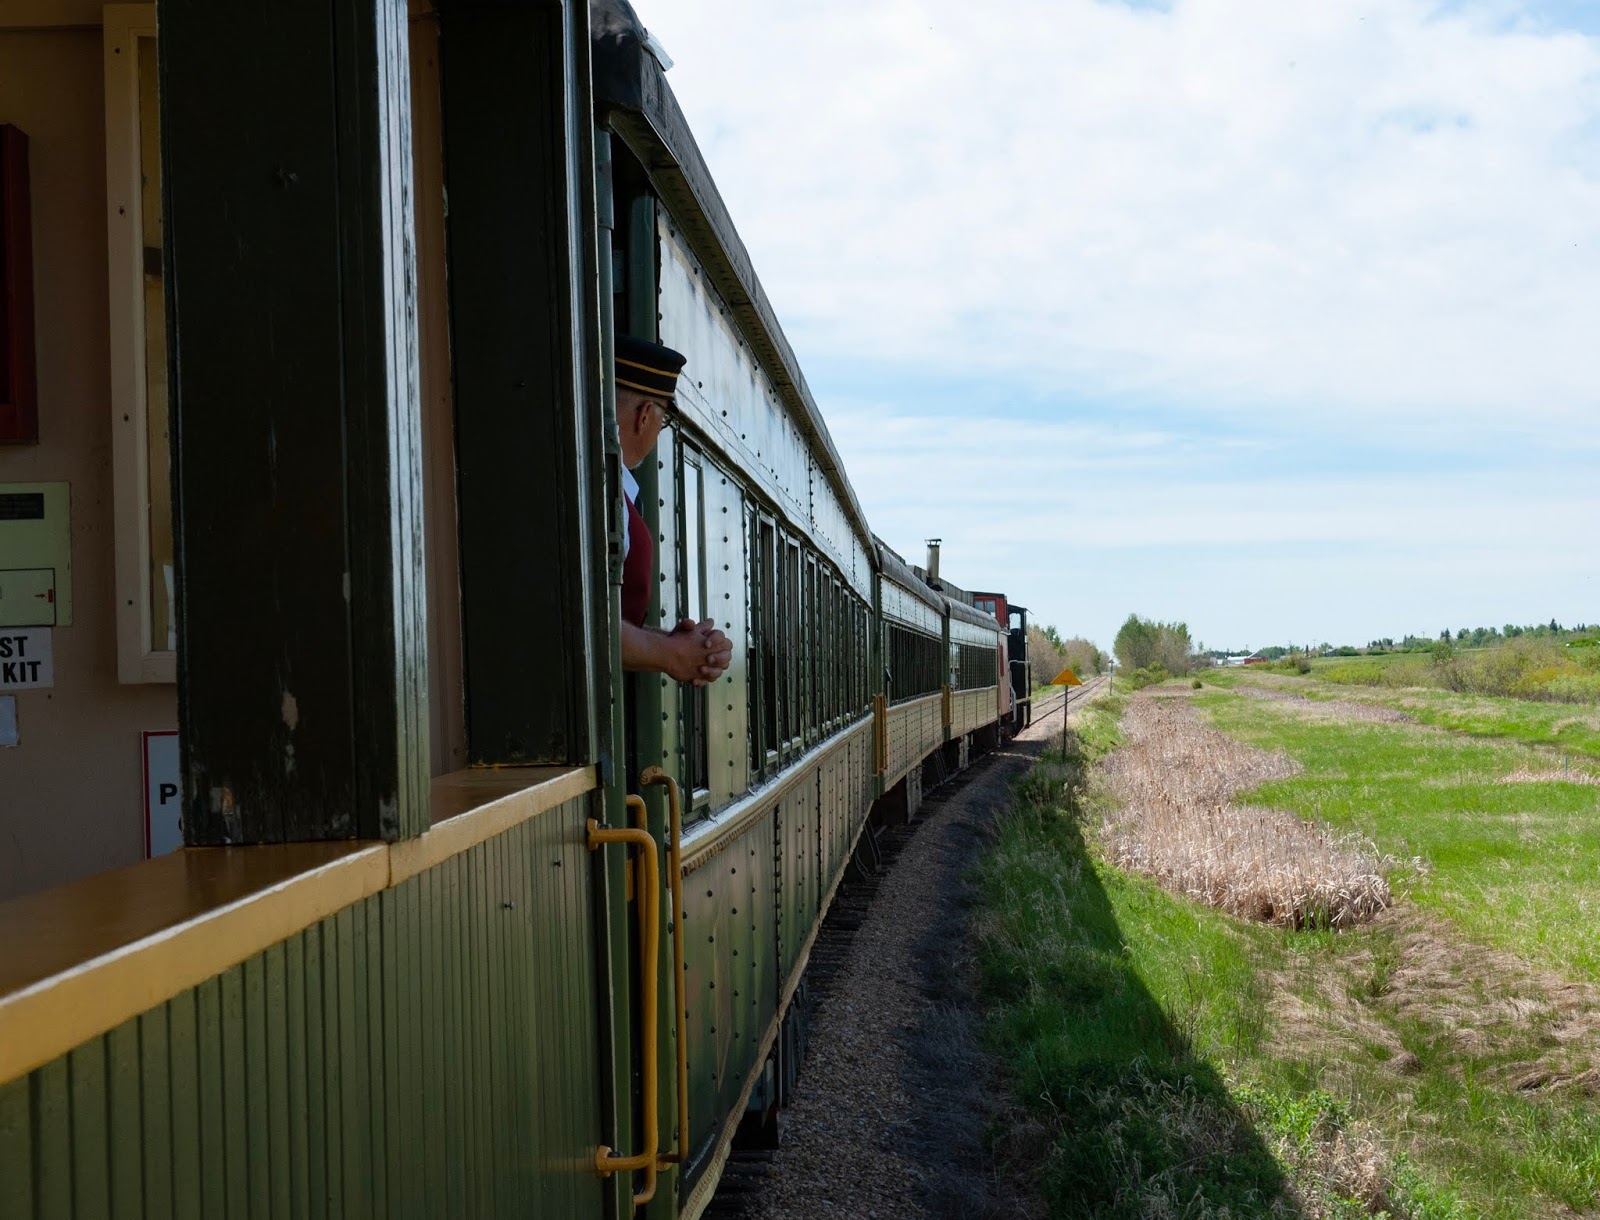 Alberta Prairie Railway Excursion, Stettler, Alberta